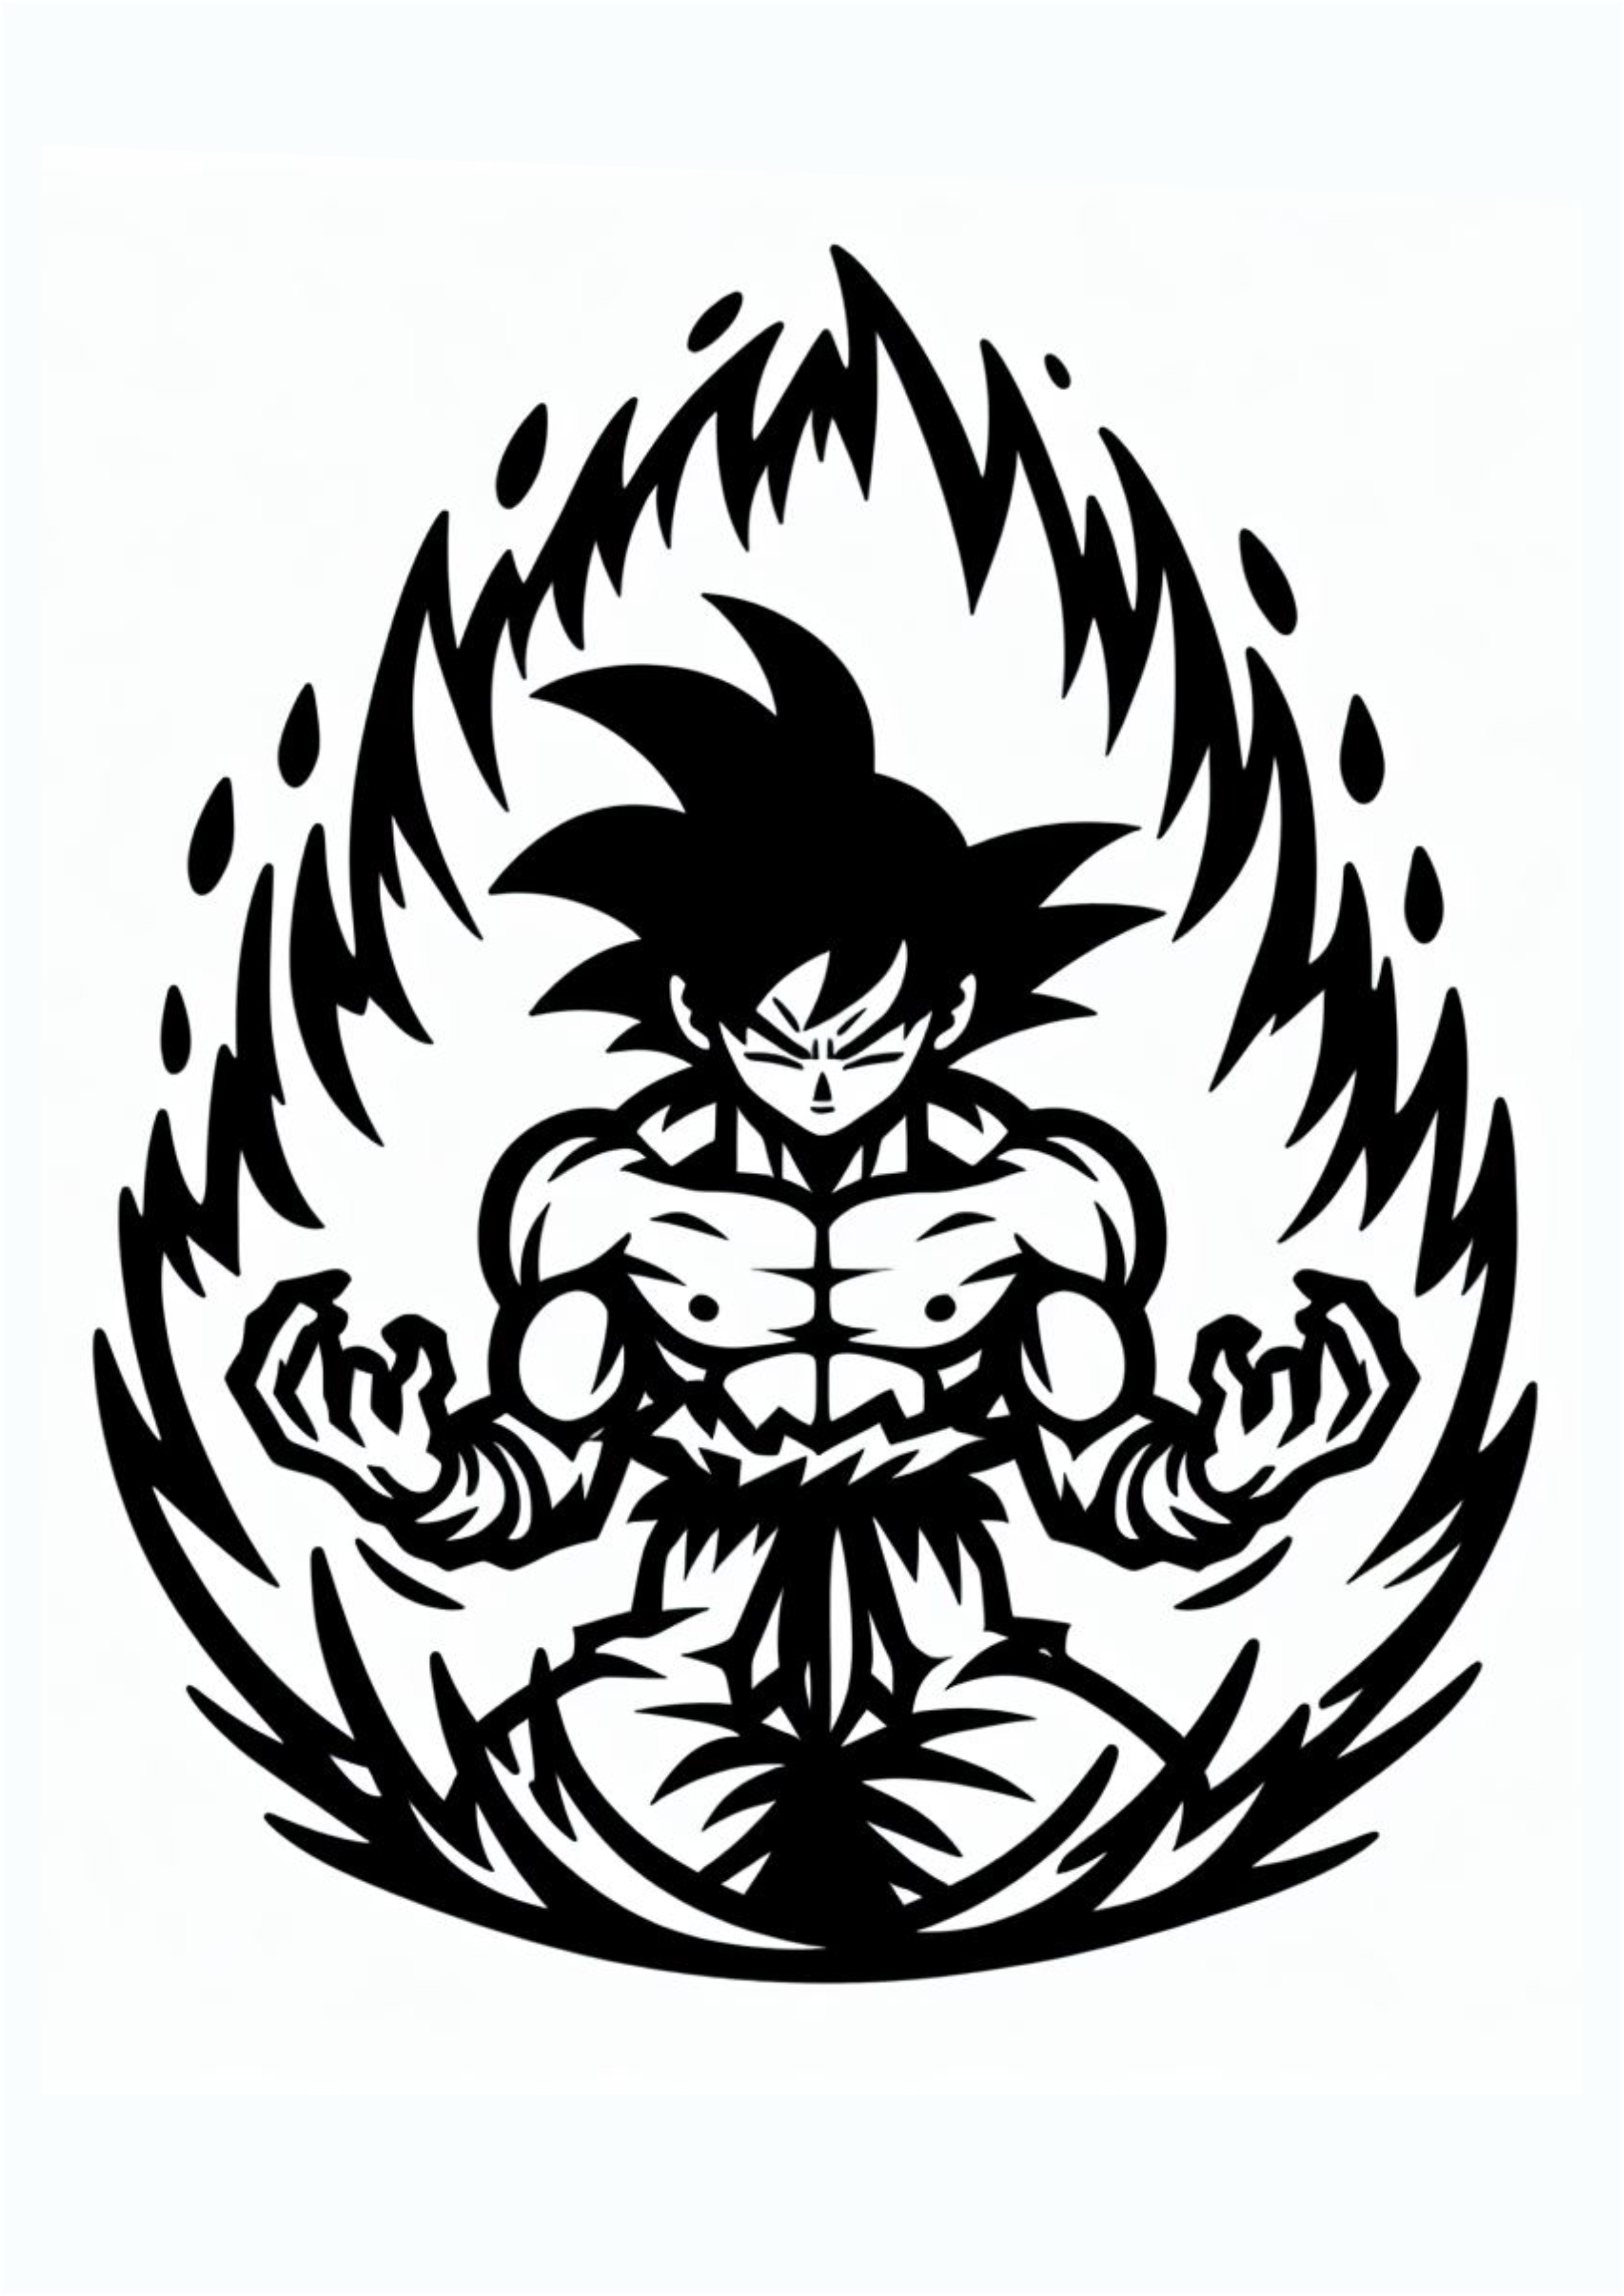 Dragon ball z ideias para tatuagem Goku desenho simples png